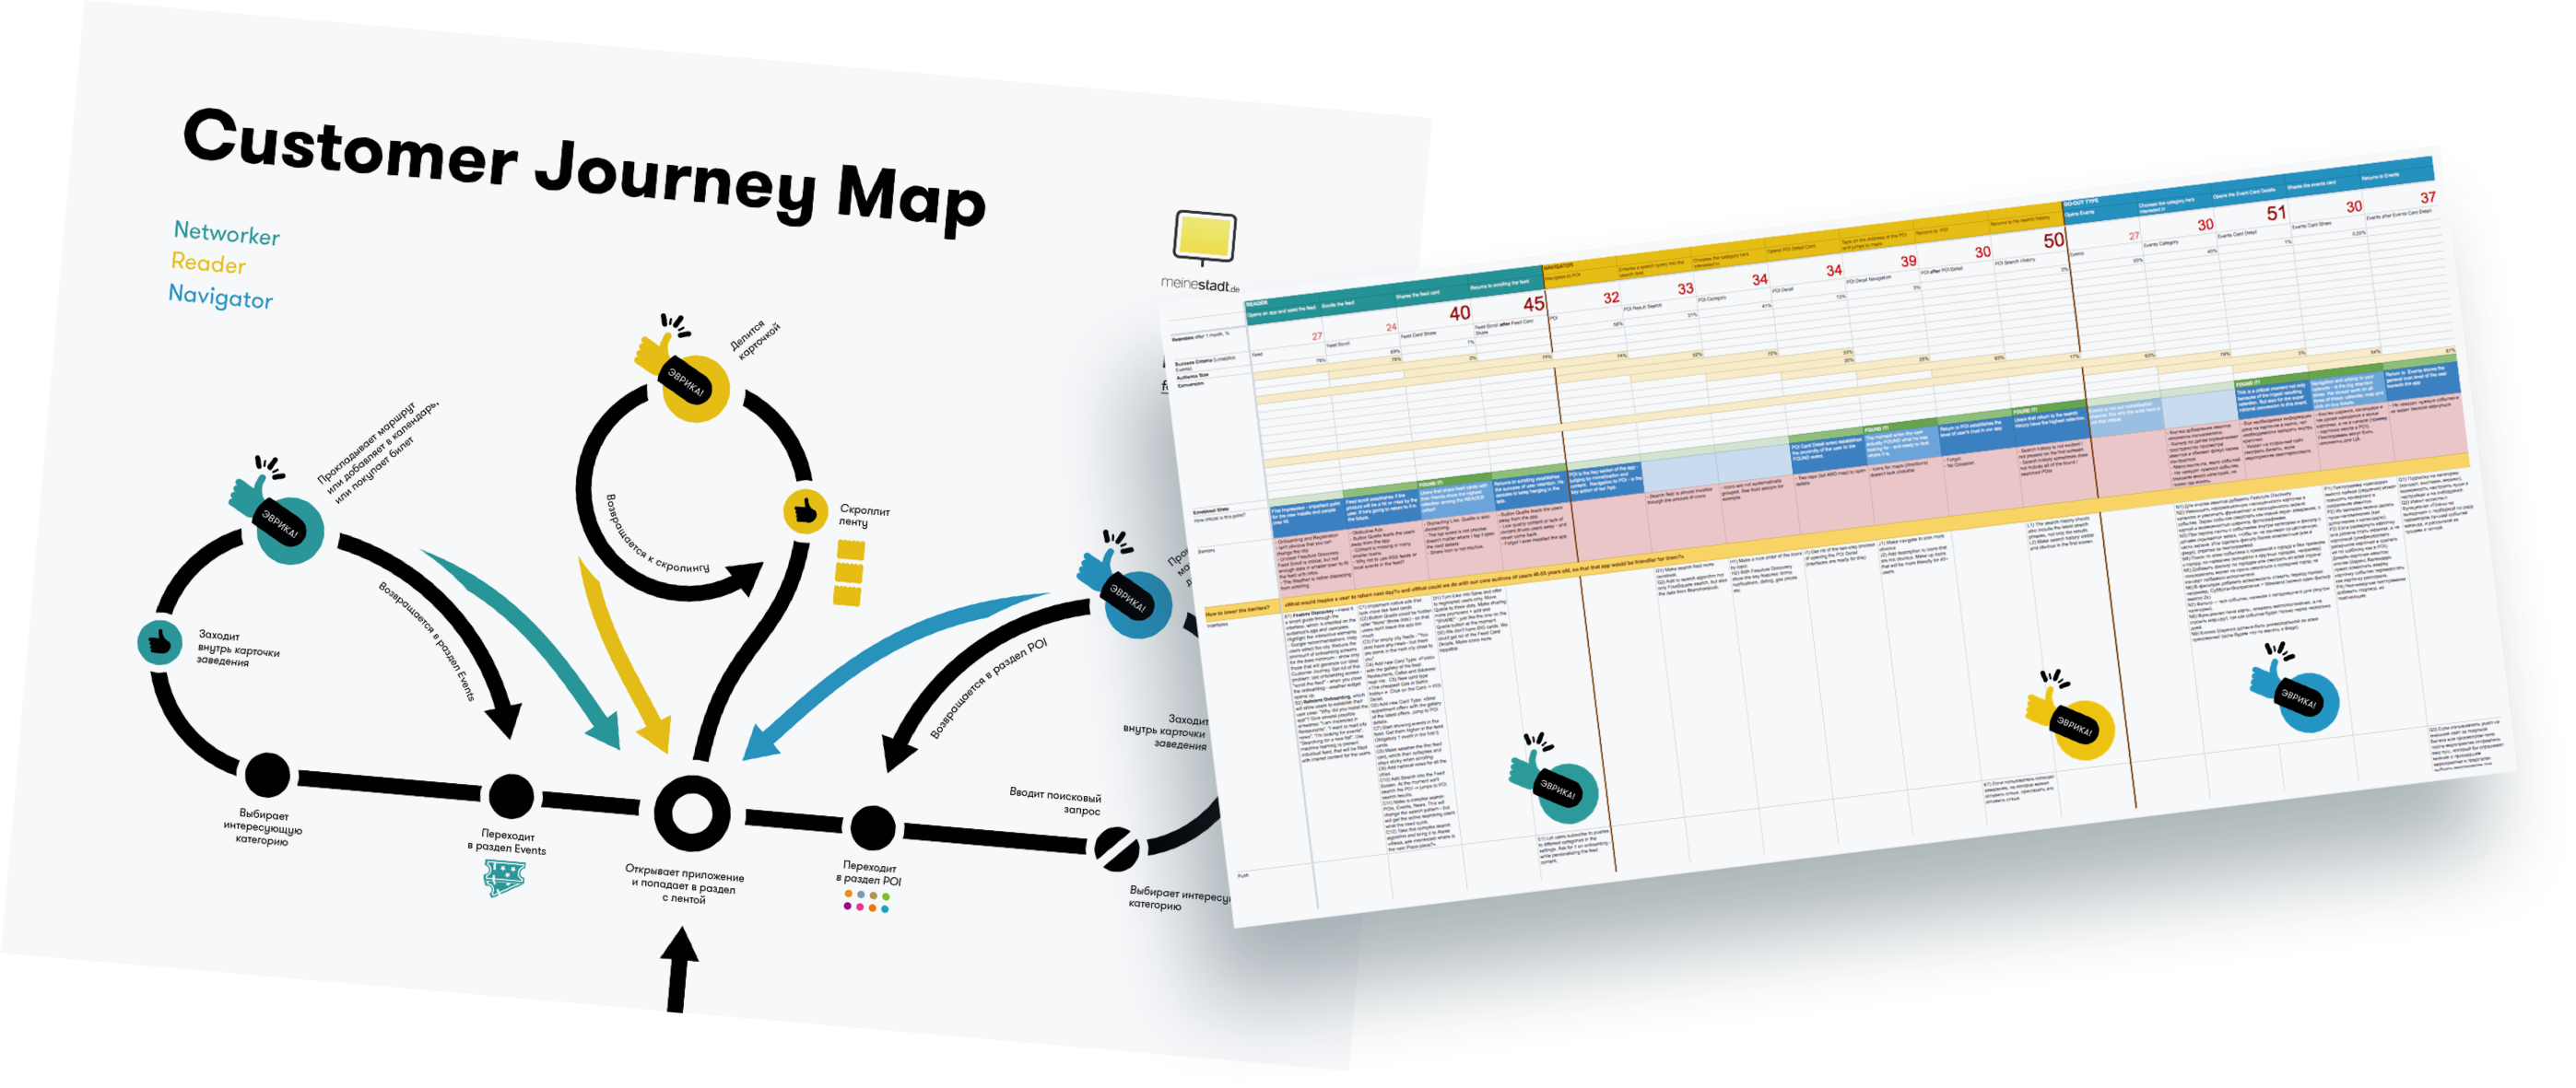 Как составить customer journey mapping. читайте на cossa.ru